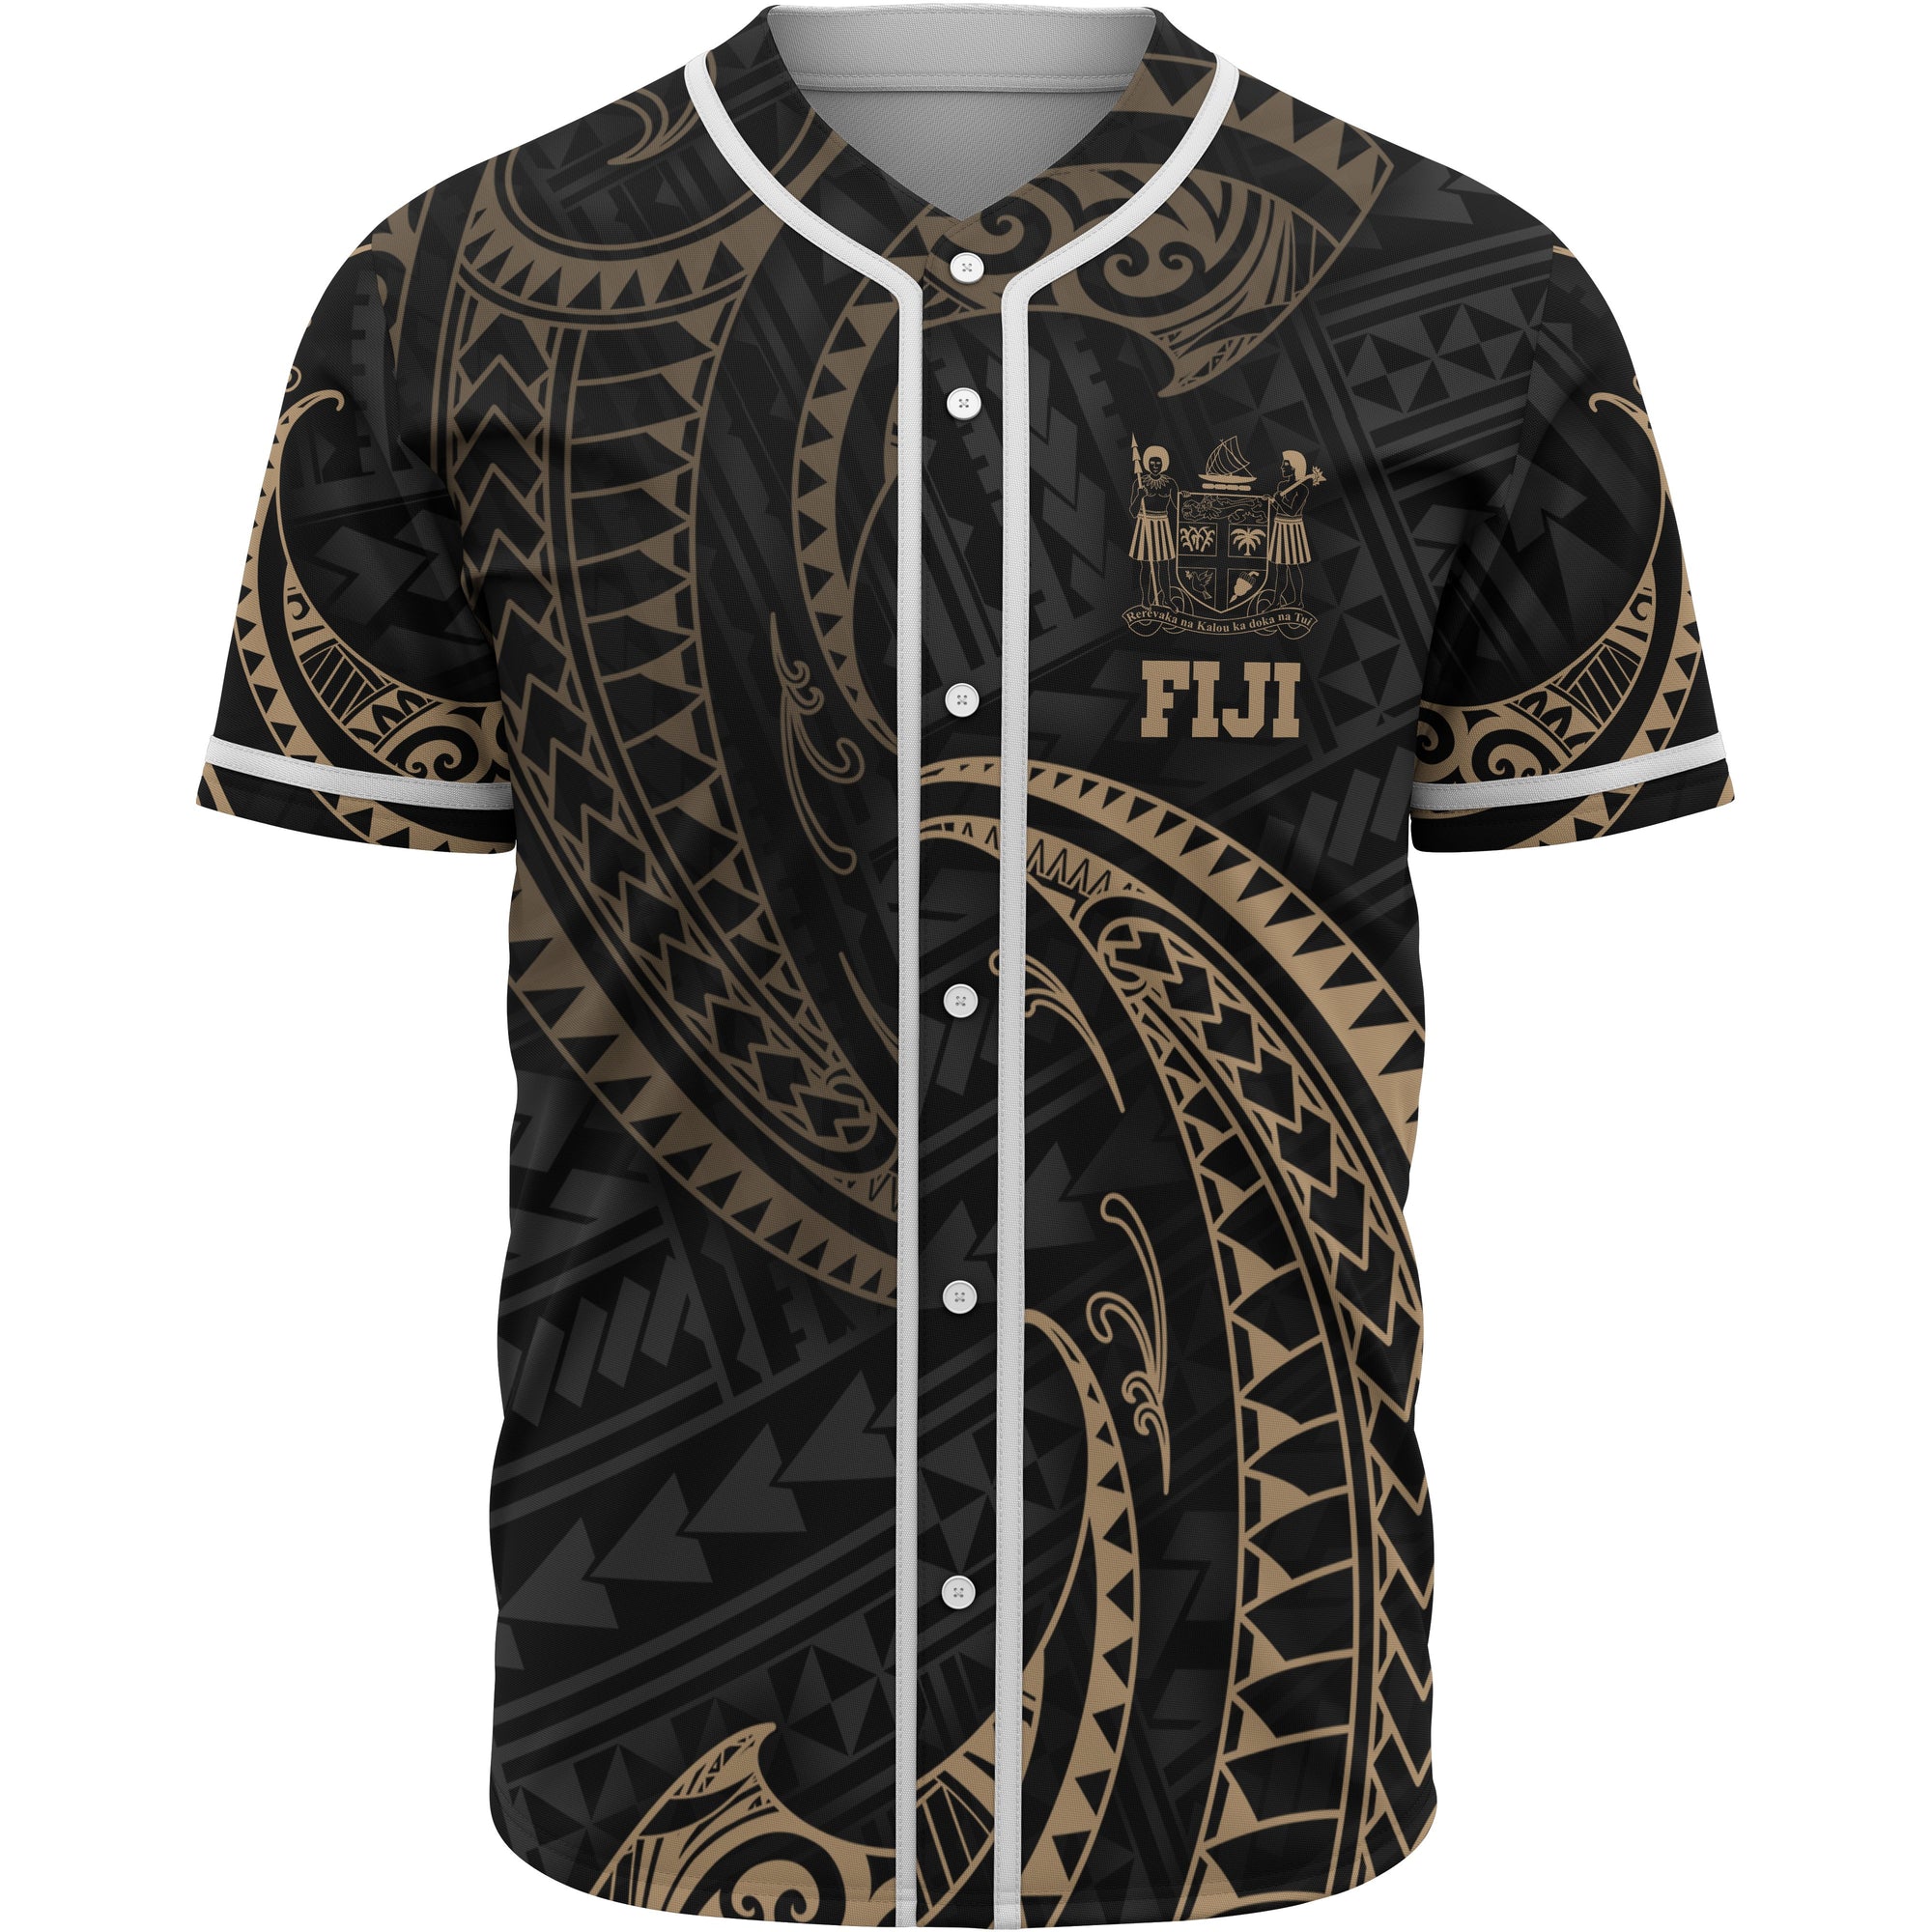 fiji-polynesian-baseball-shirt-gold-tribal-wave